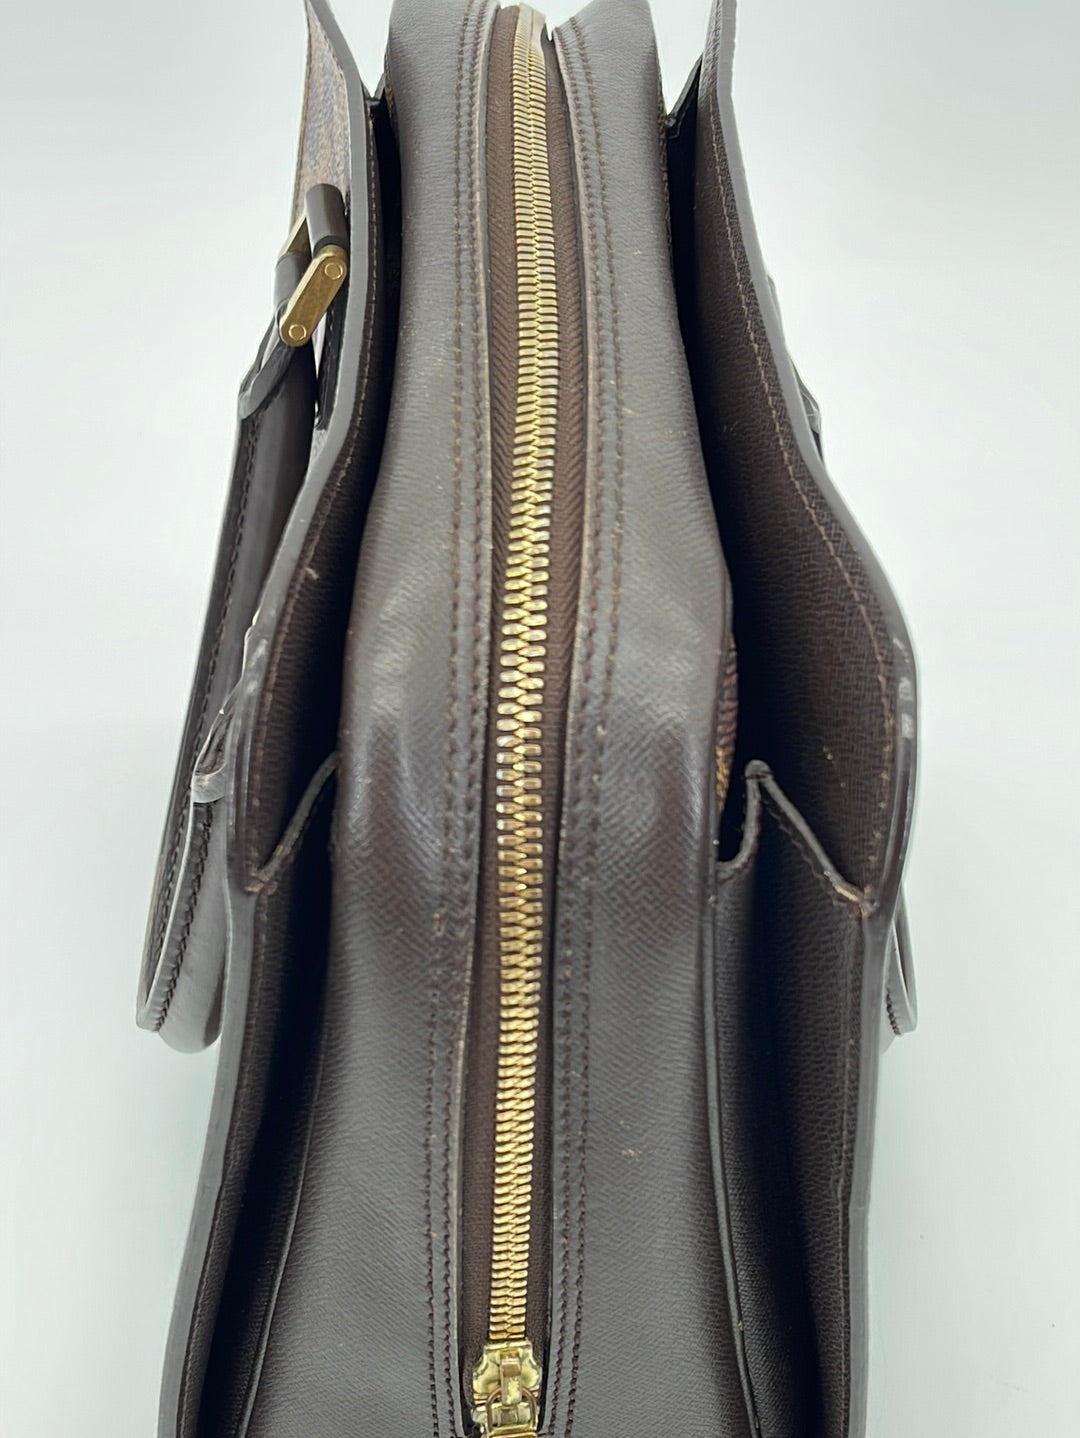 Louis Vuitton 2000s Pre-owned Damier Ebène Triana Handbag - Brown